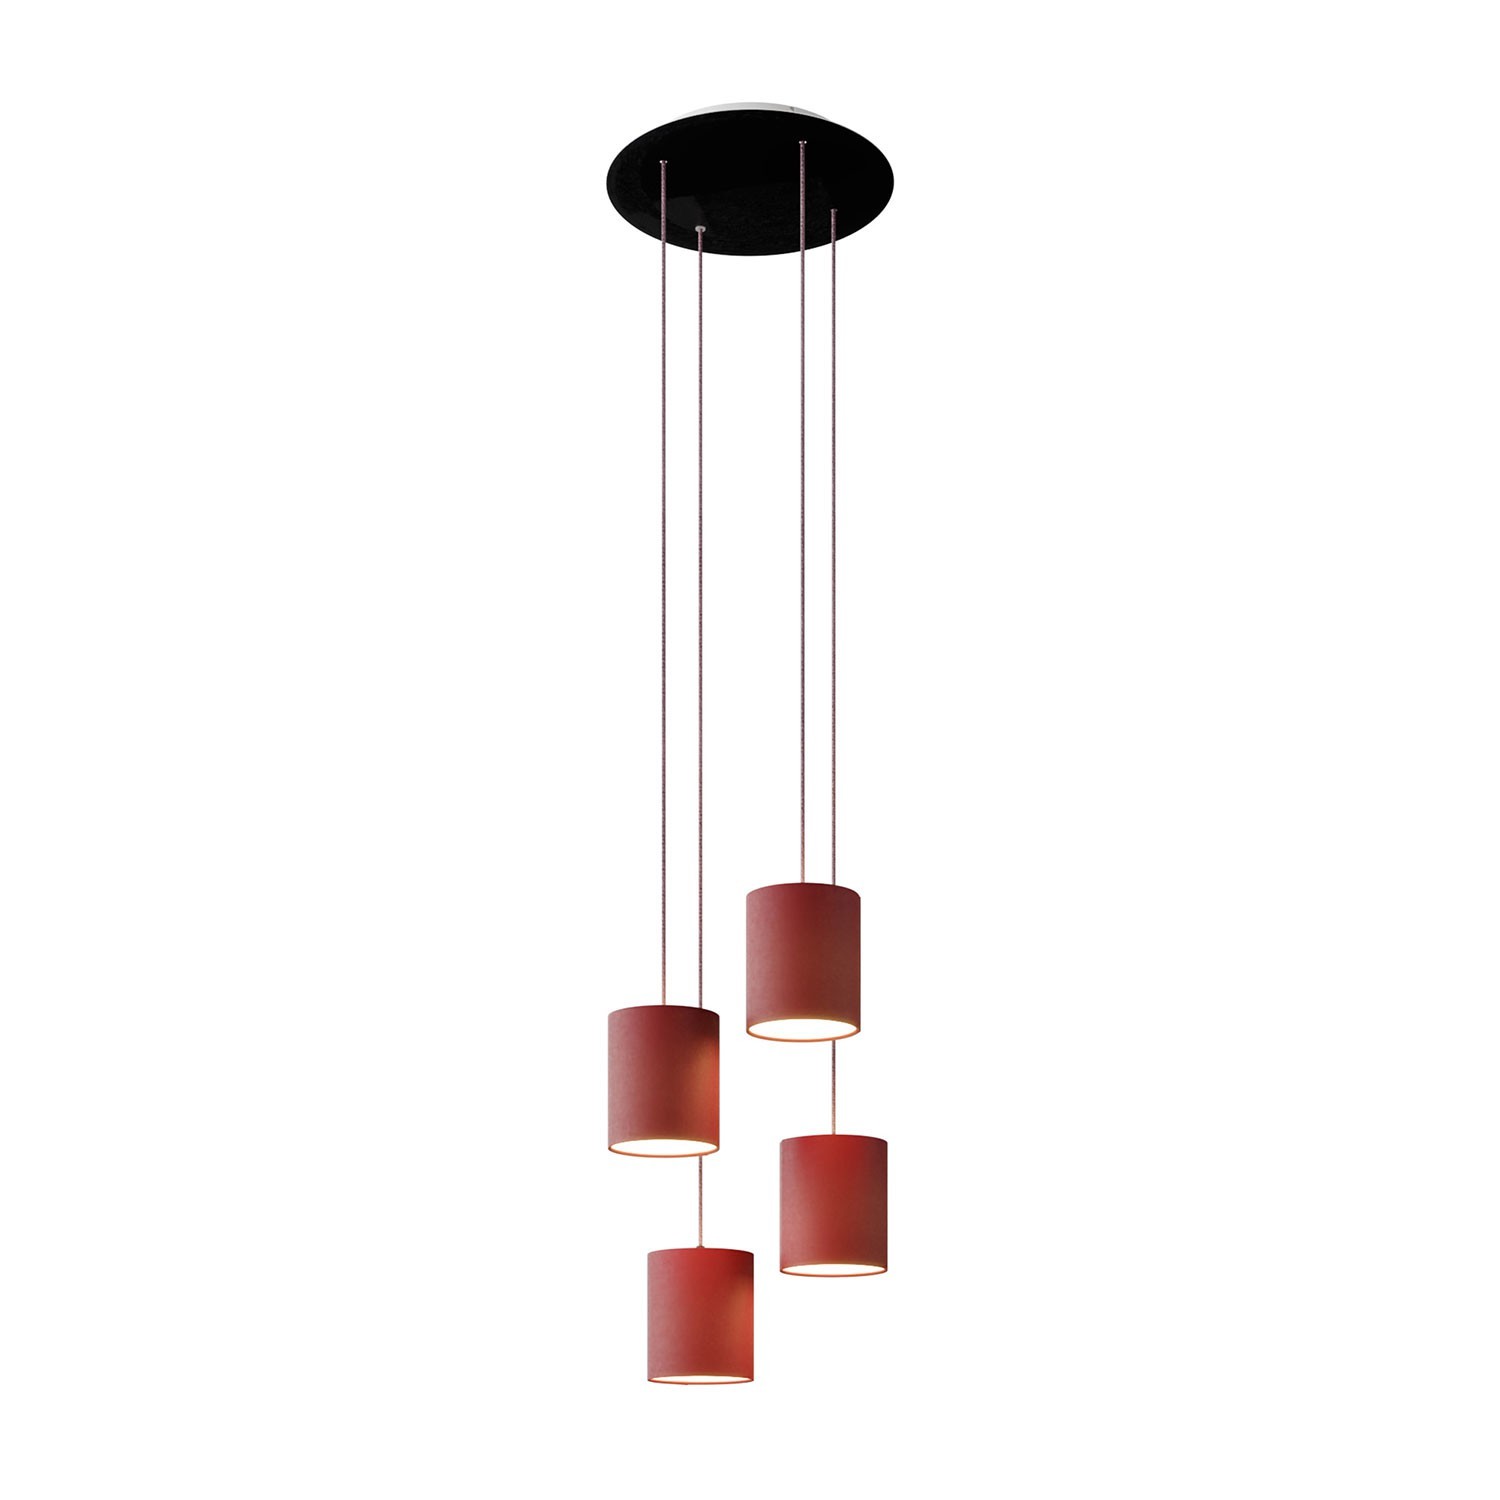 Závesná lampa so 4 svetlami, s okrúhlou XXL rozetou Rose-One, textilným káblom a valcovými plátennými tienidlami